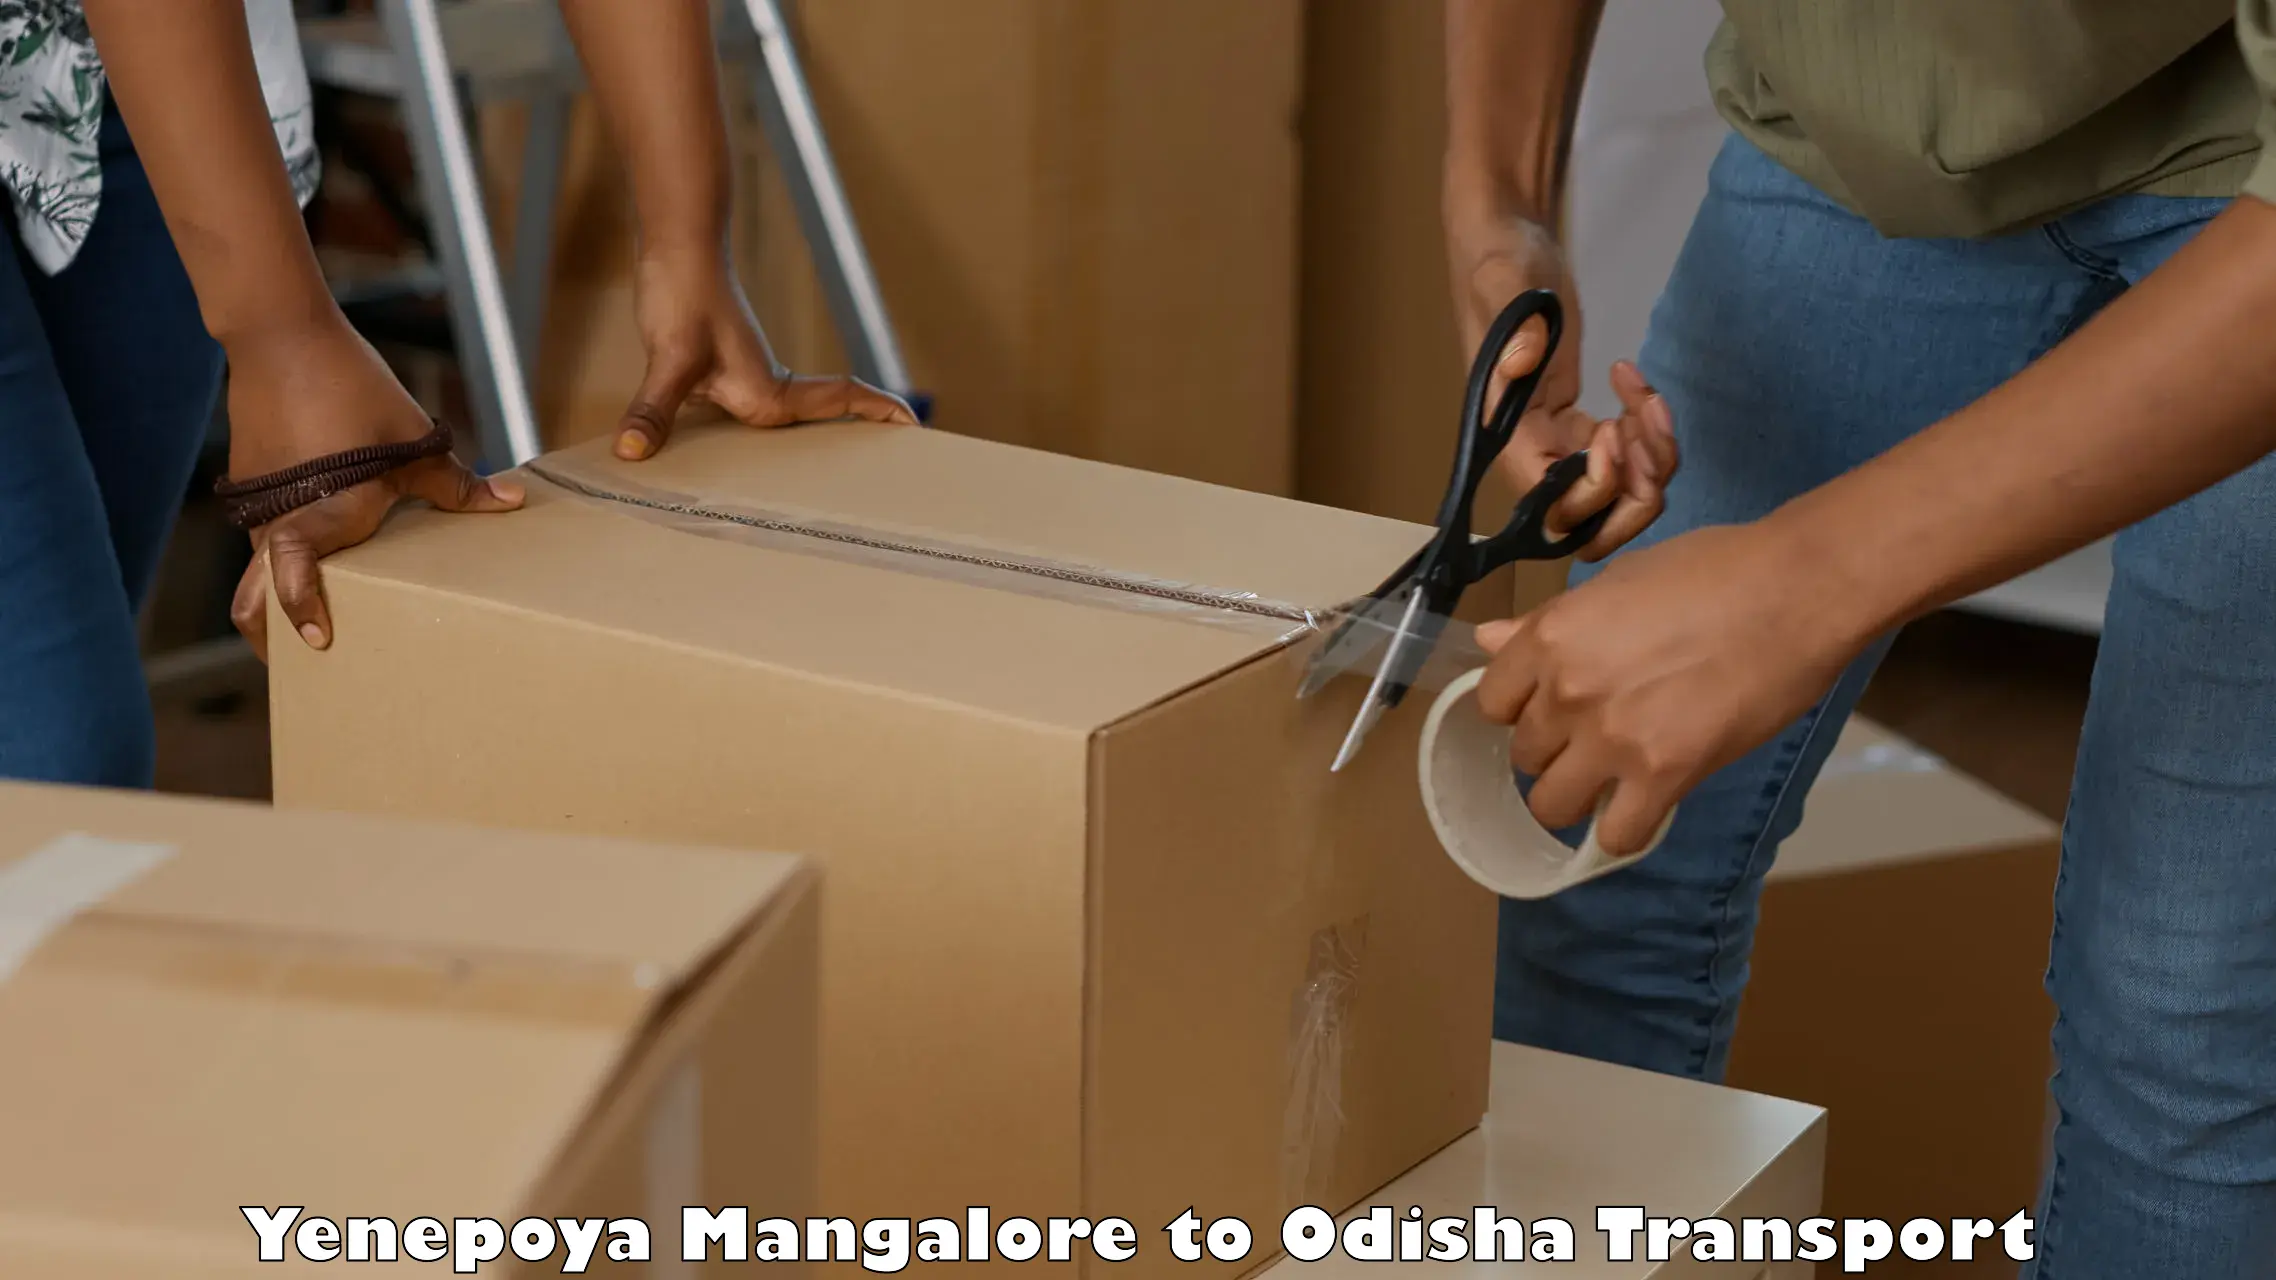 Cargo transport services Yenepoya Mangalore to Ukhunda